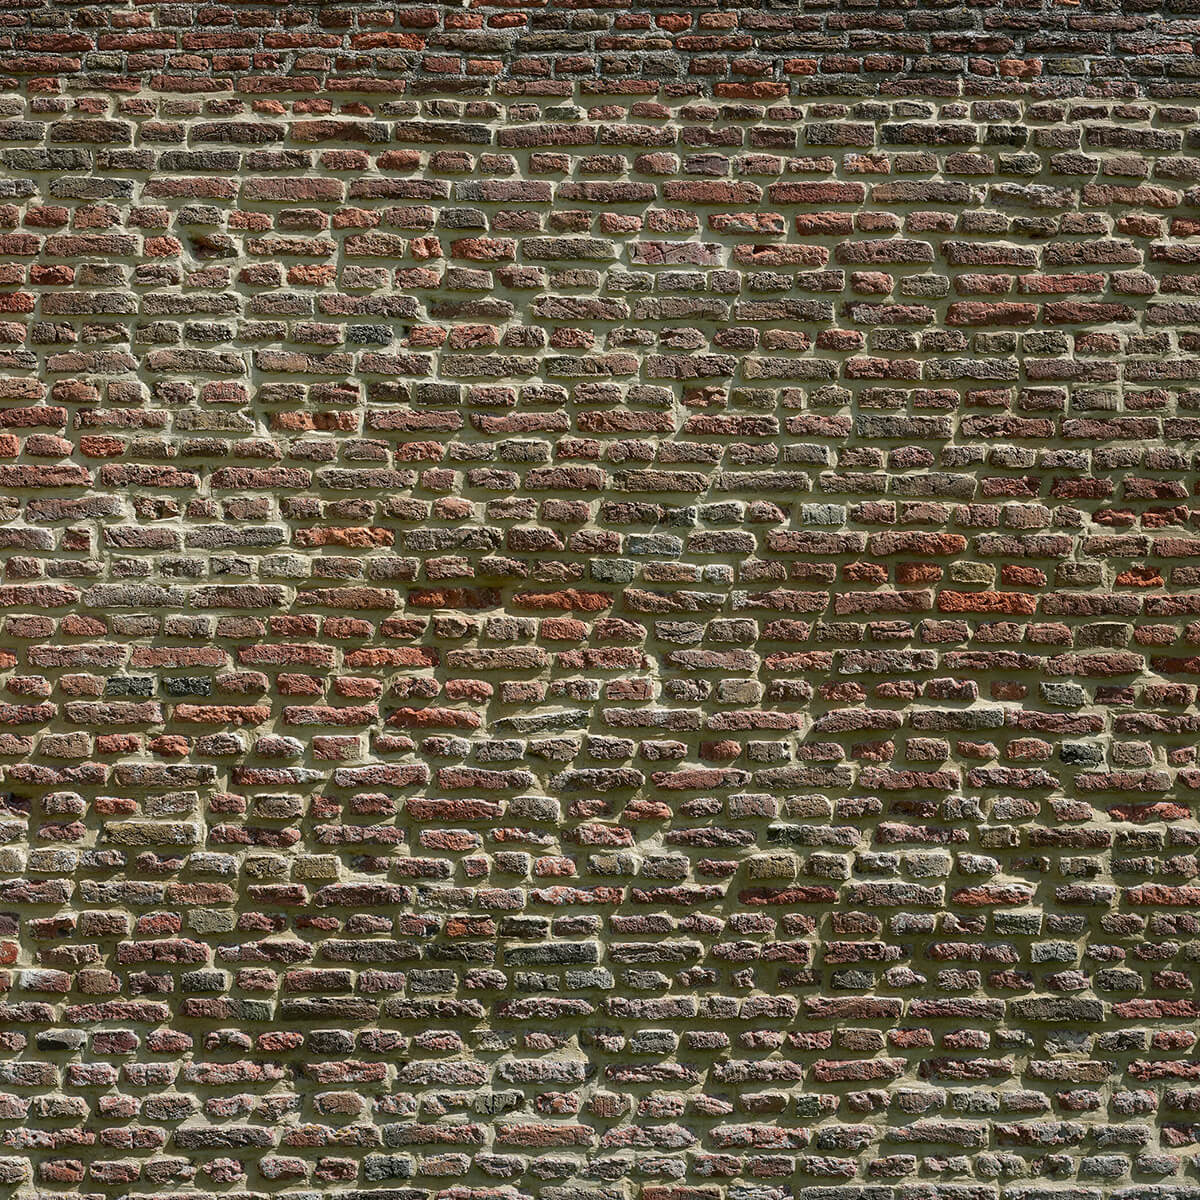 Wall of old bricks